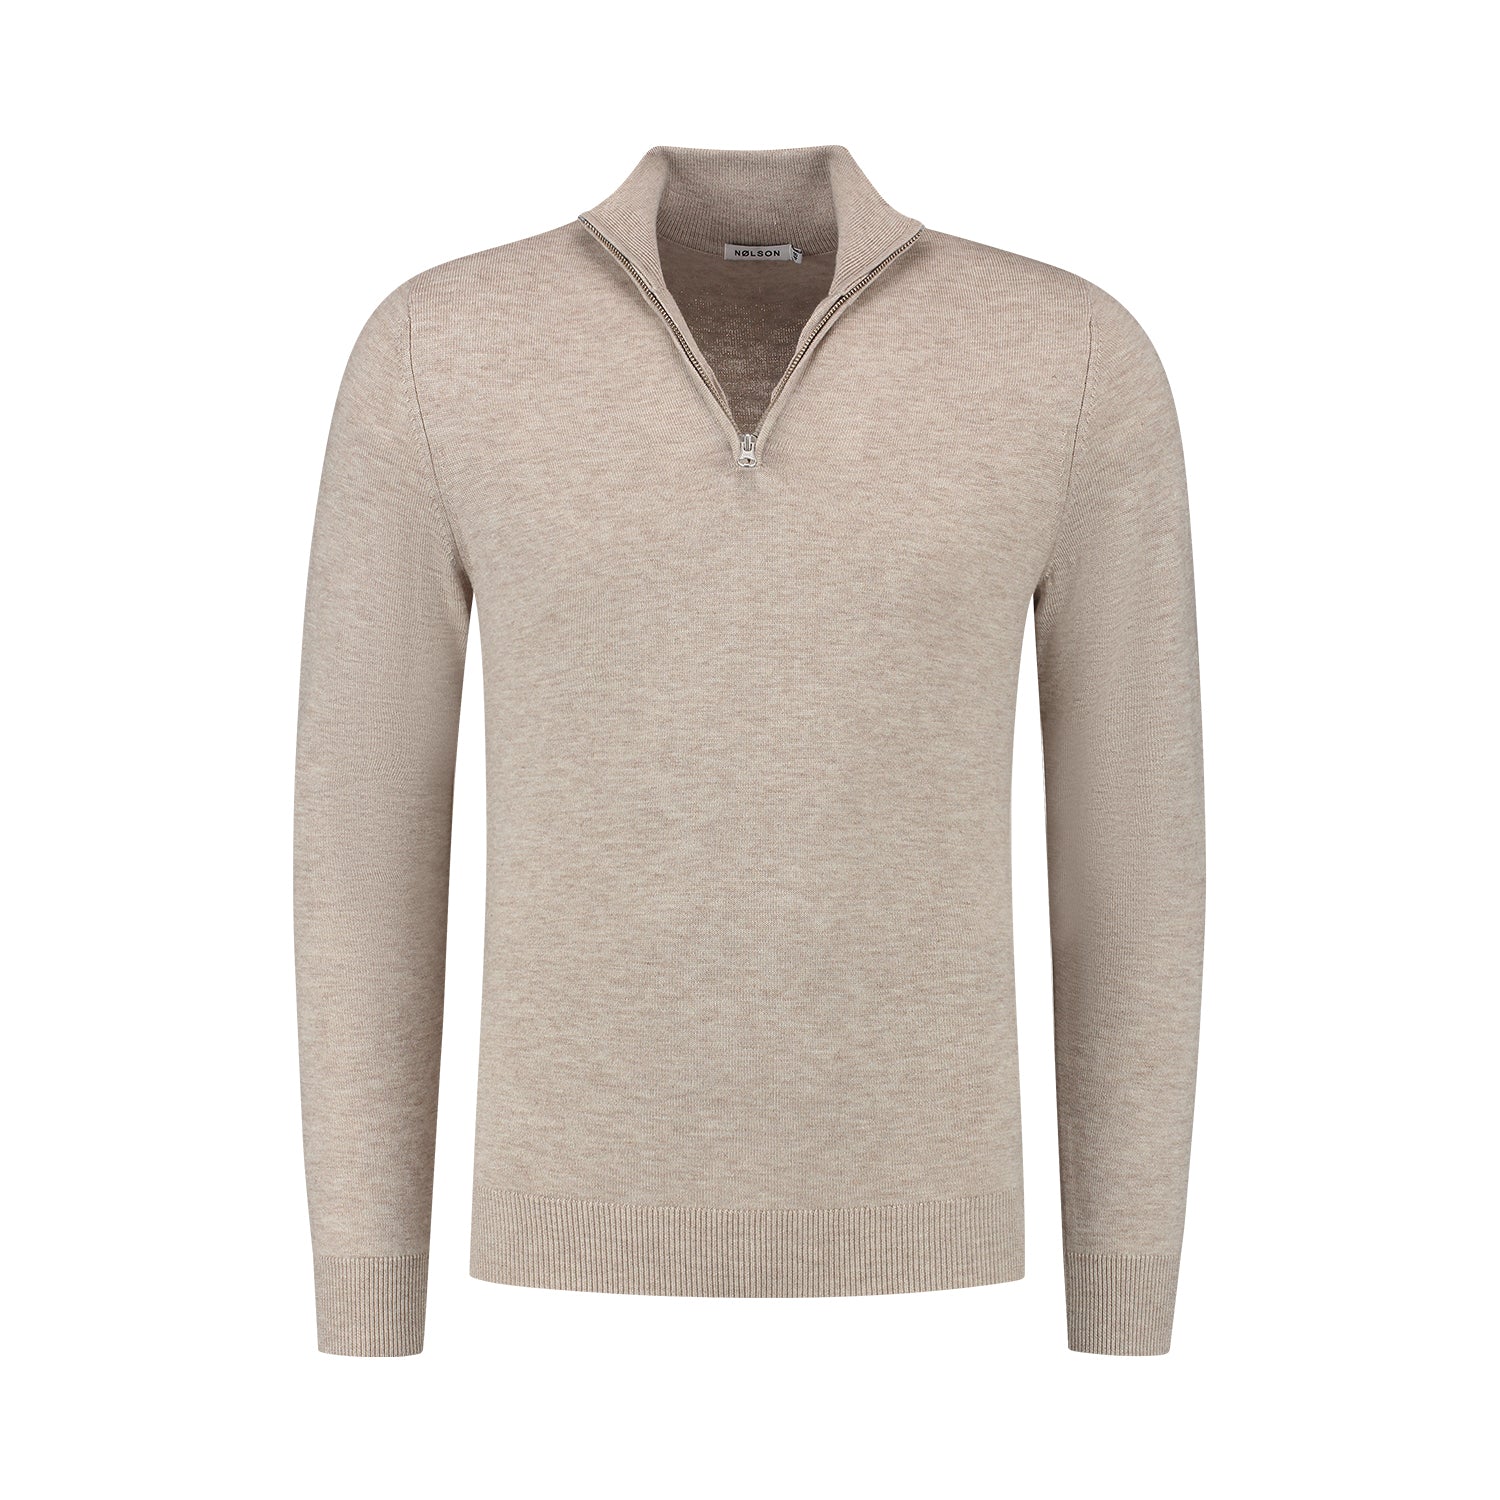 Quarter-zip Beige Sweater